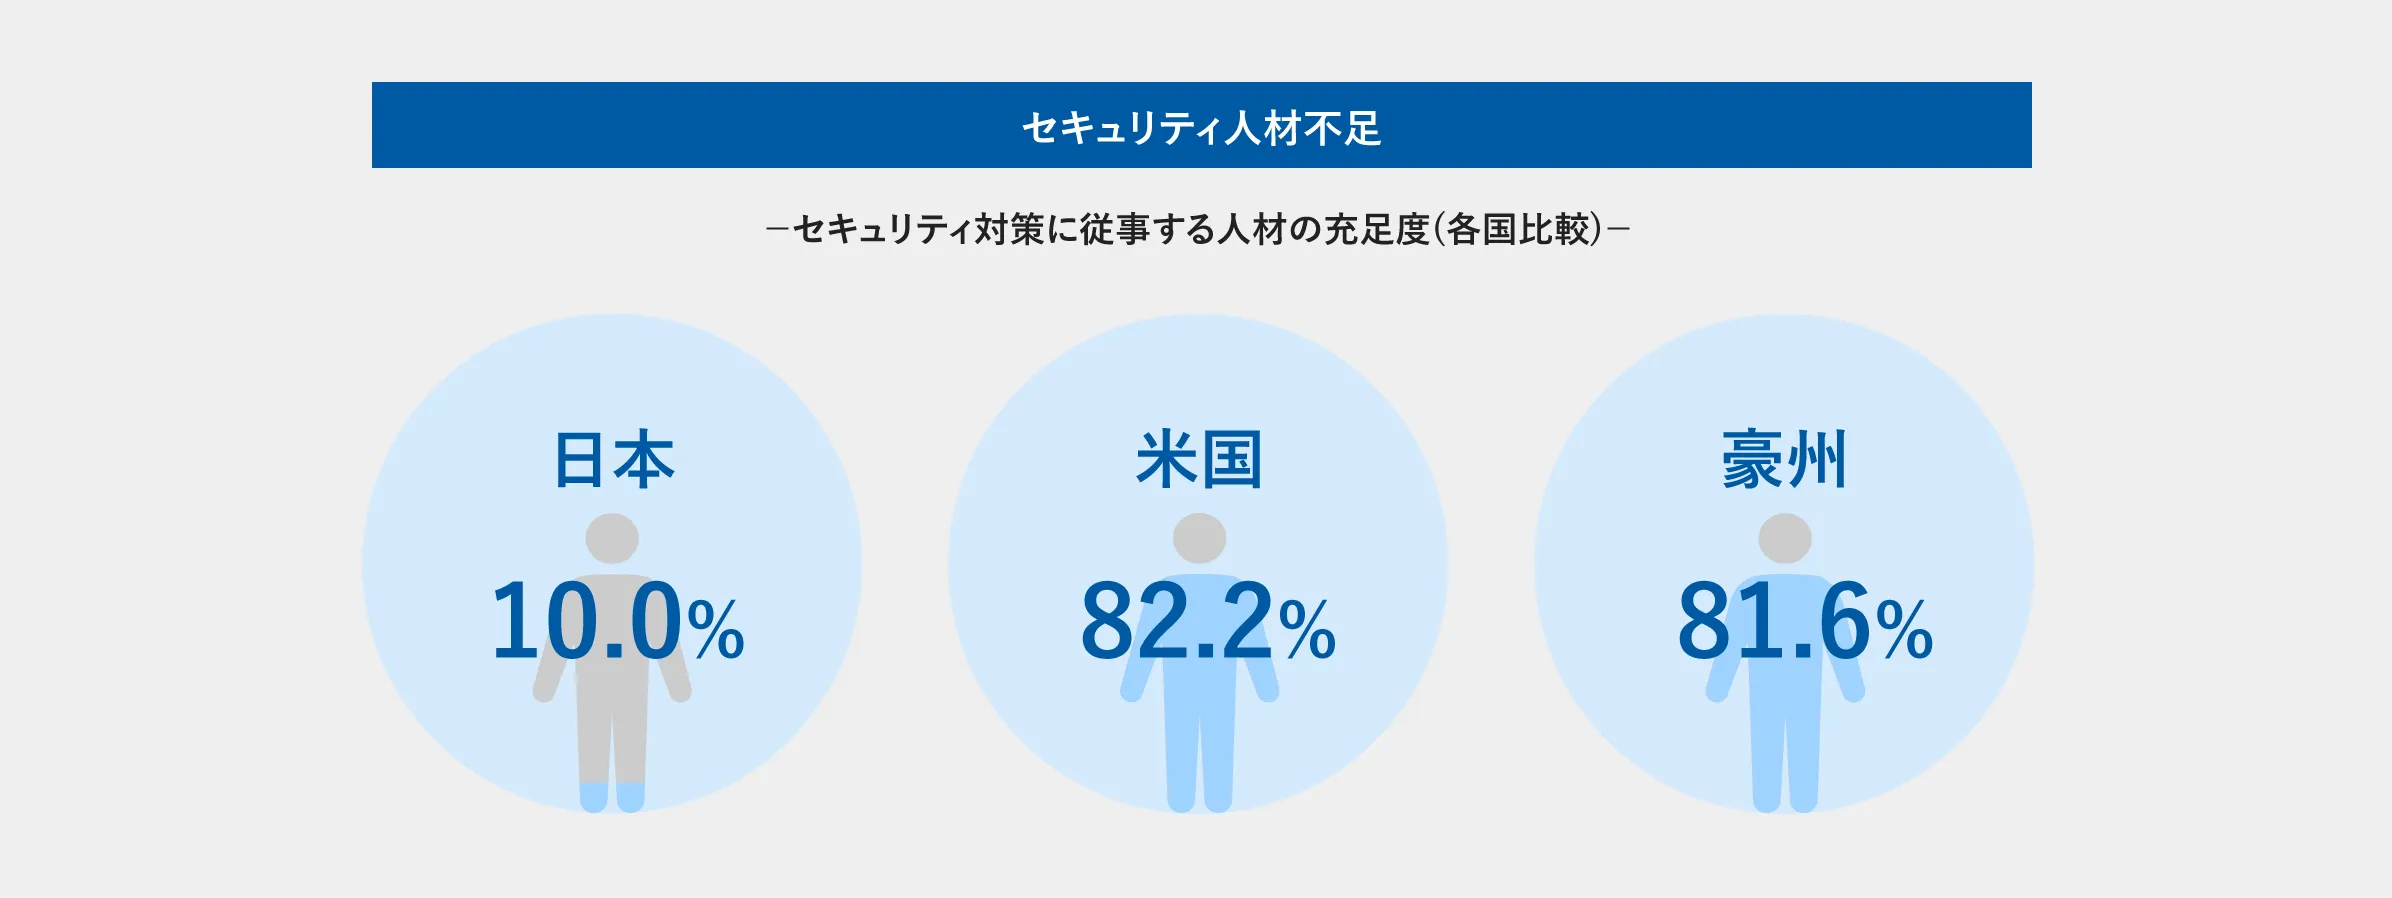 海外諸国に比べ、日本はセキュリティ人材が圧倒的に不足